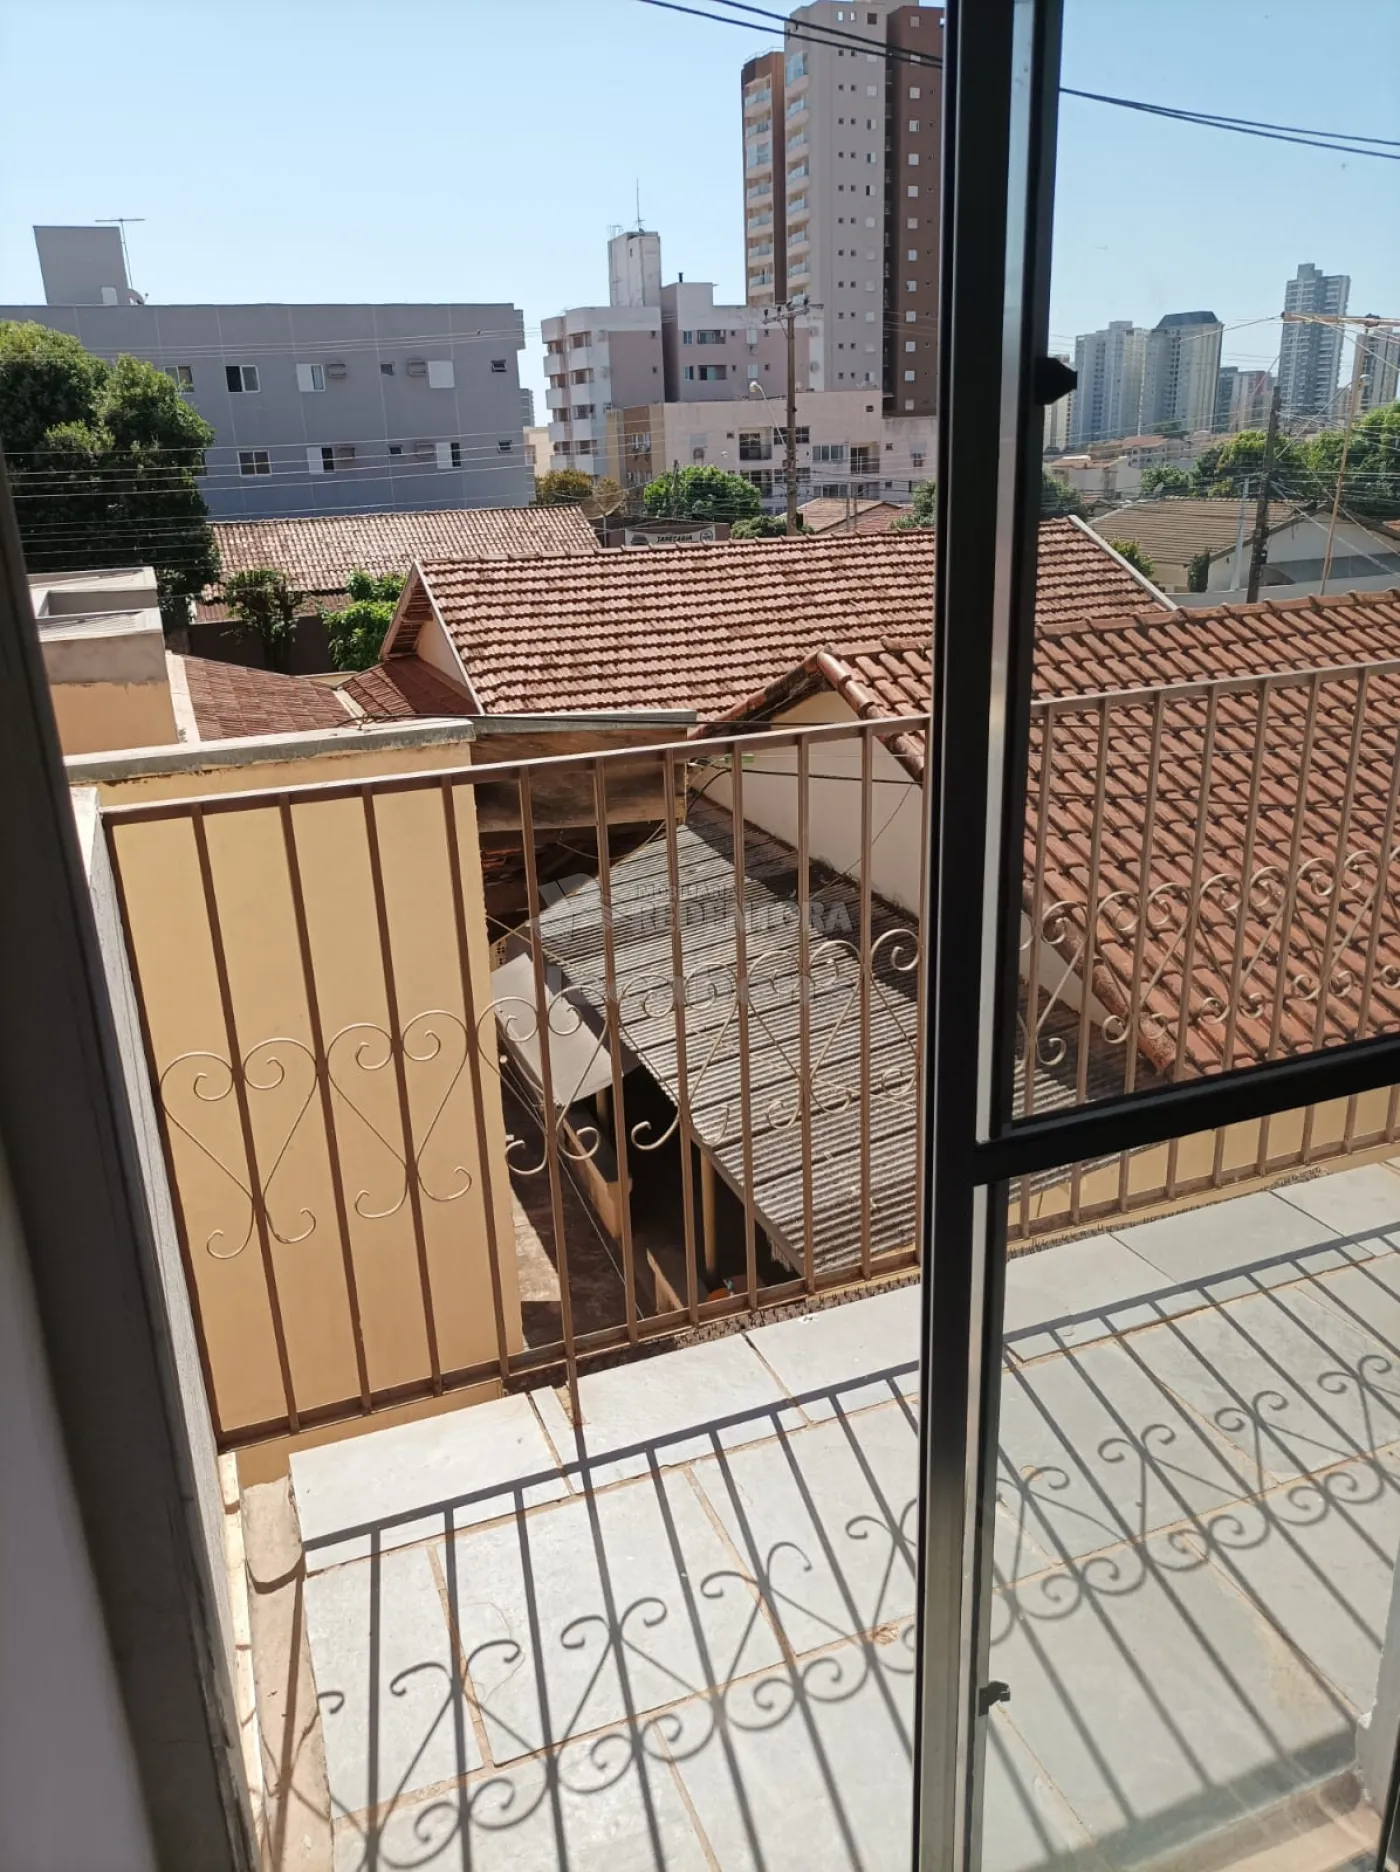 Alugar Apartamento / Padrão em São José do Rio Preto apenas R$ 1.500,00 - Foto 11